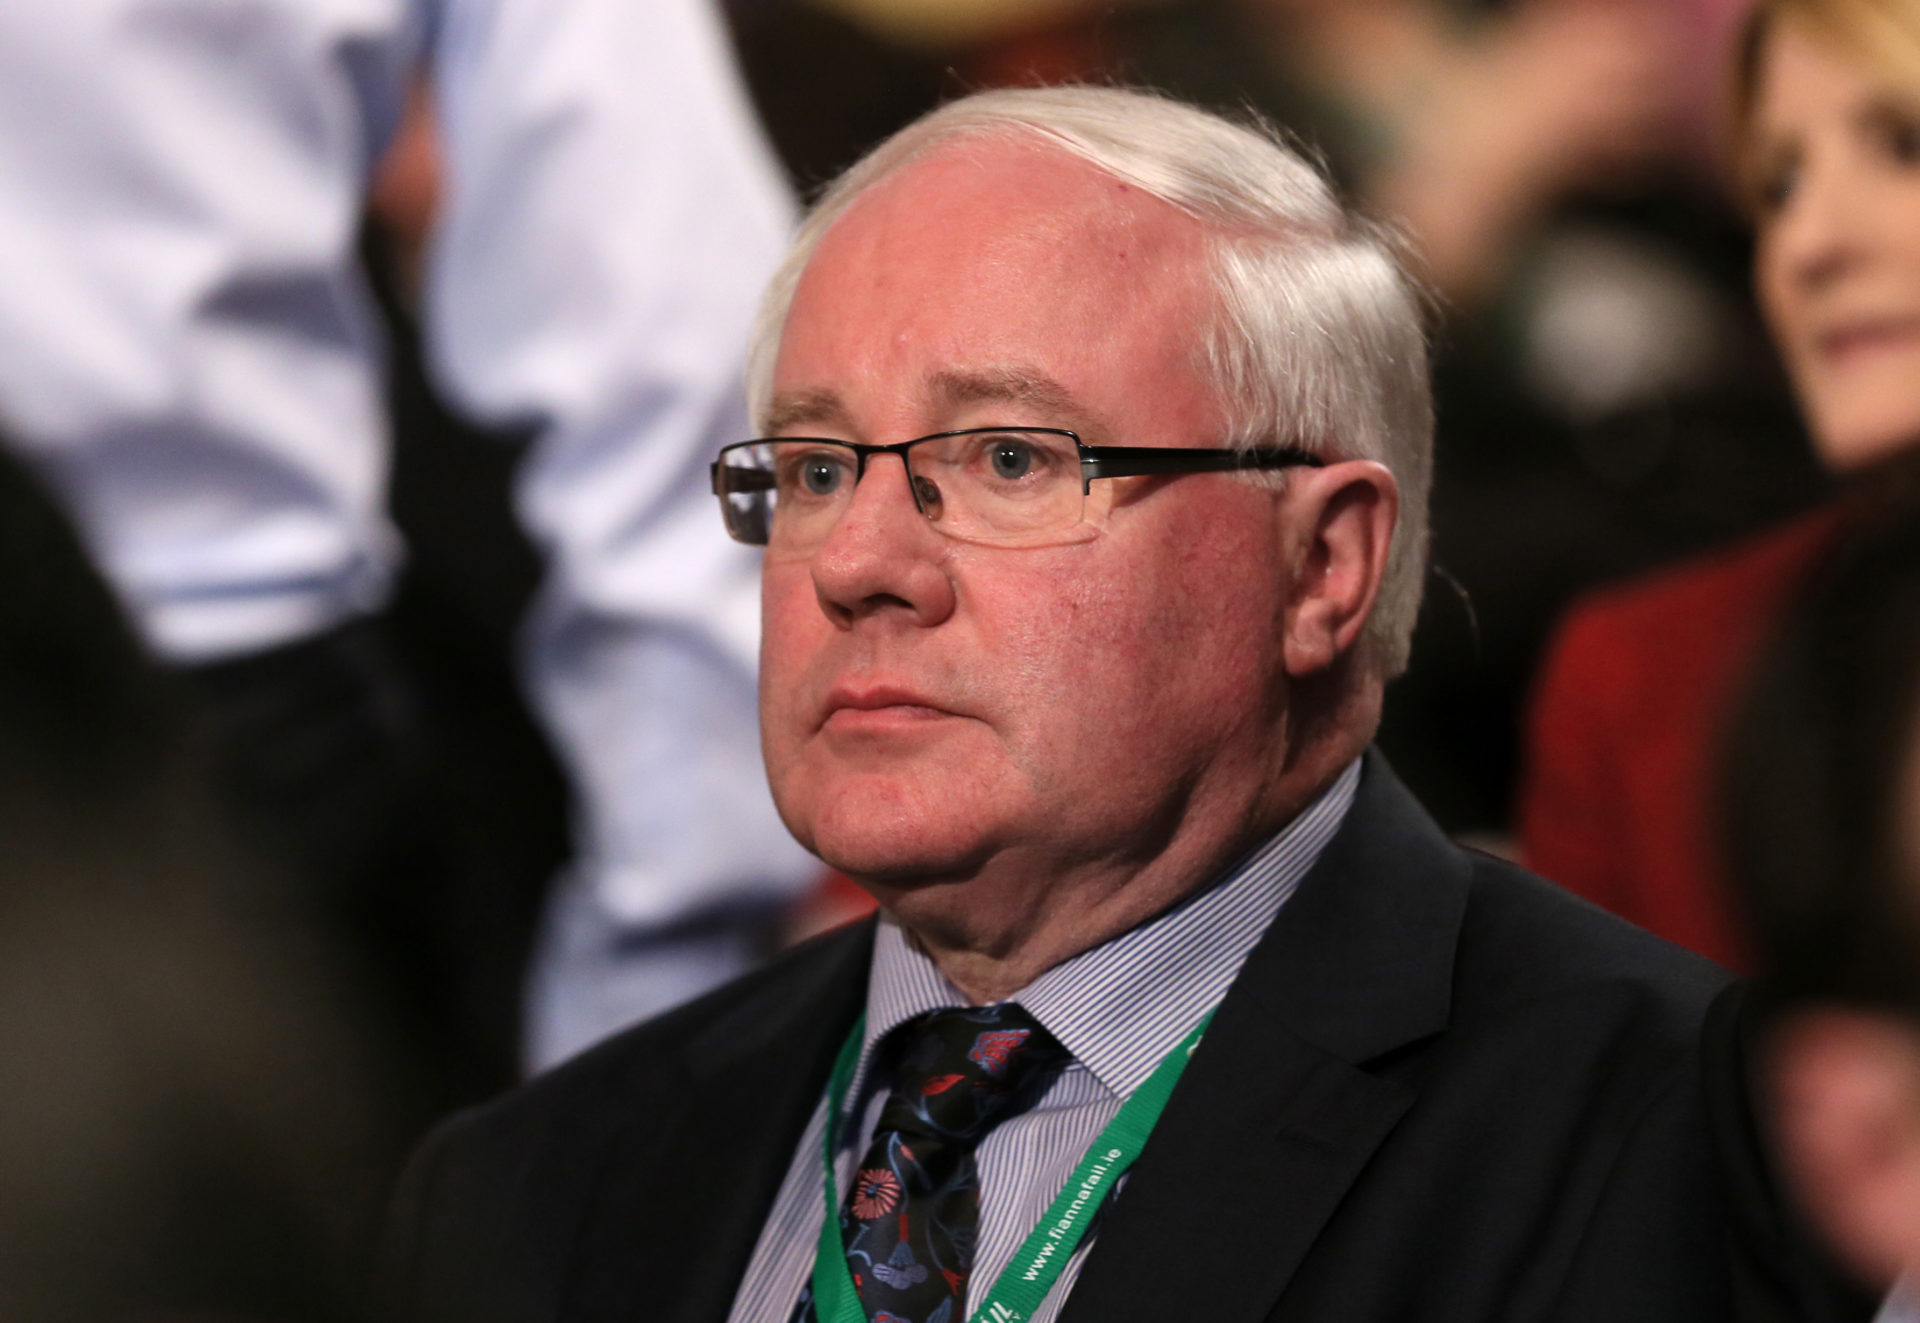 Brendan Smith at the Fianna Fail Ard Fheis 2014. Image: RollingNews